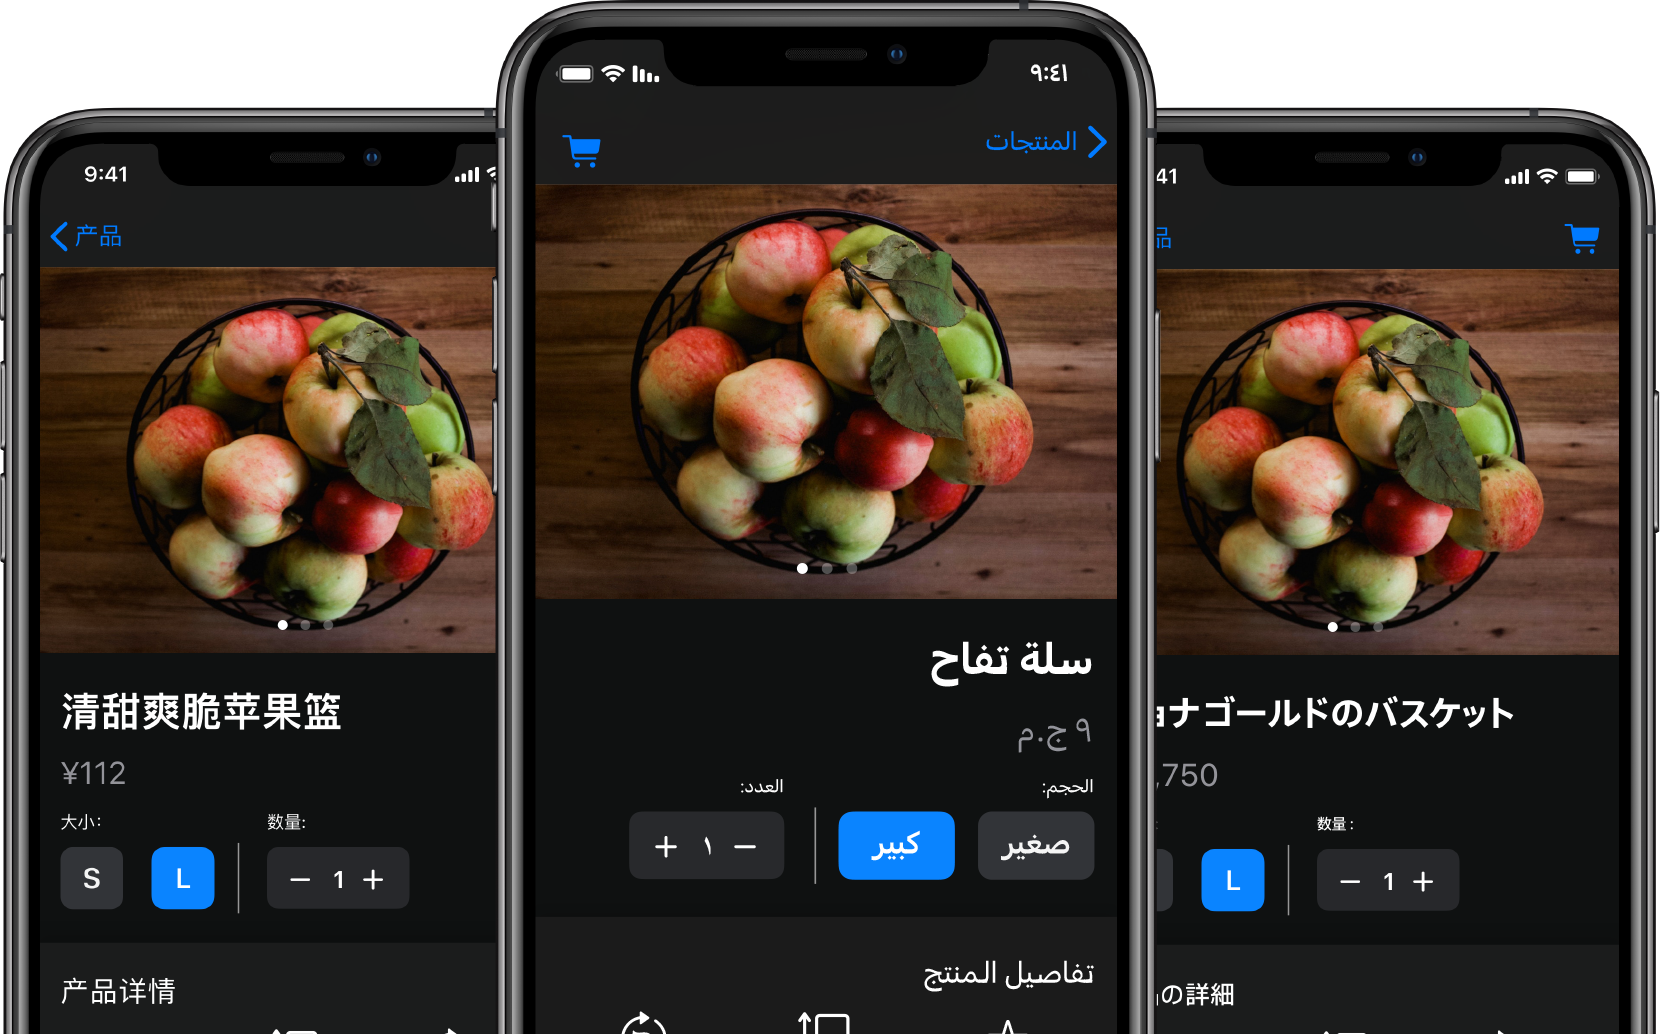 フードデリバリーのアプリが開いている3台のiPhone。それぞれのiPhoneのテキストコンテンツが別々の言語に翻訳されている。